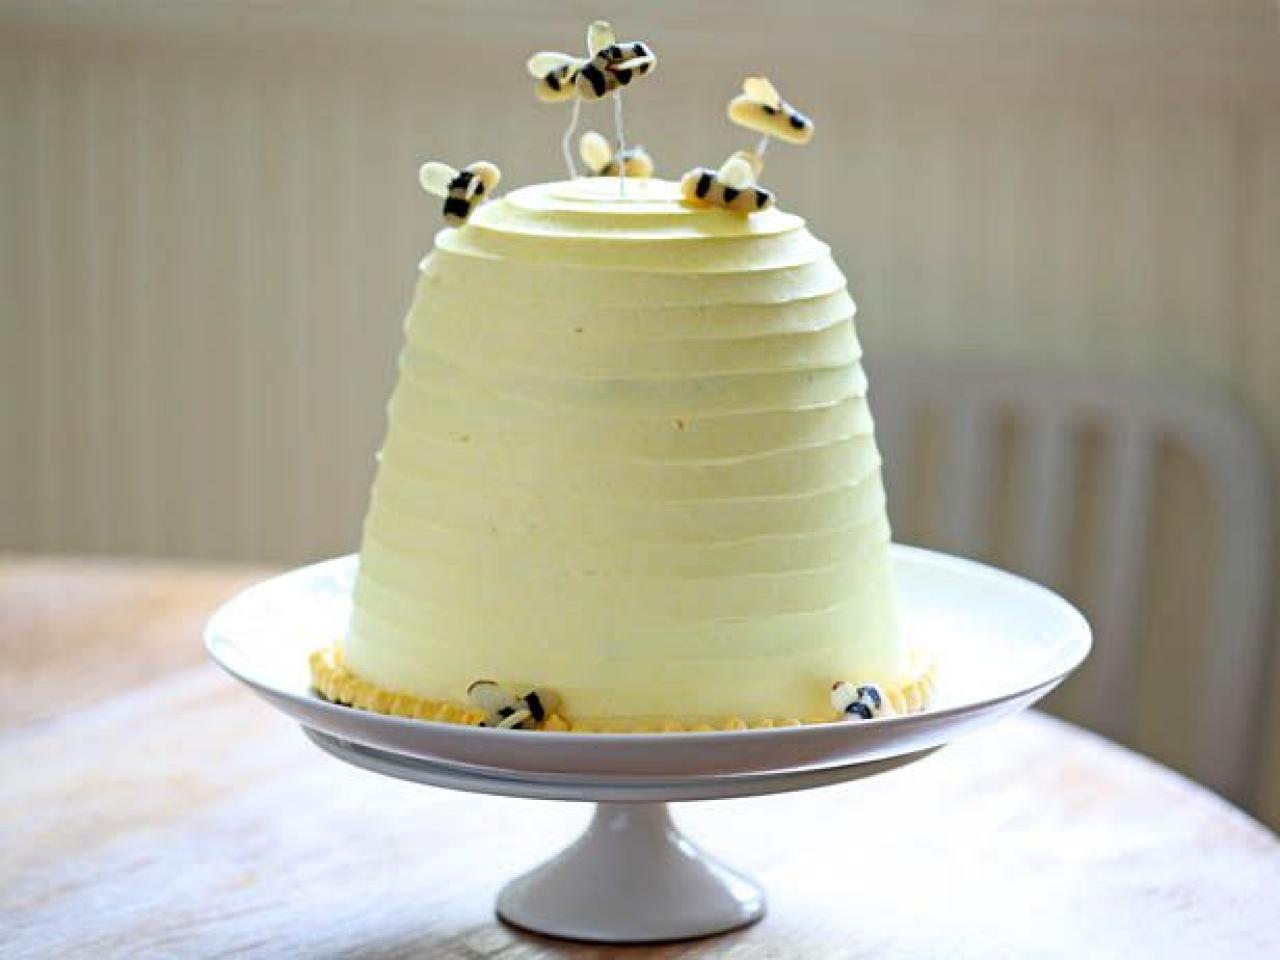 Easy Honey Bee Mine Cake Tutorial That's Super Impressive - XO, Katie  Rosario